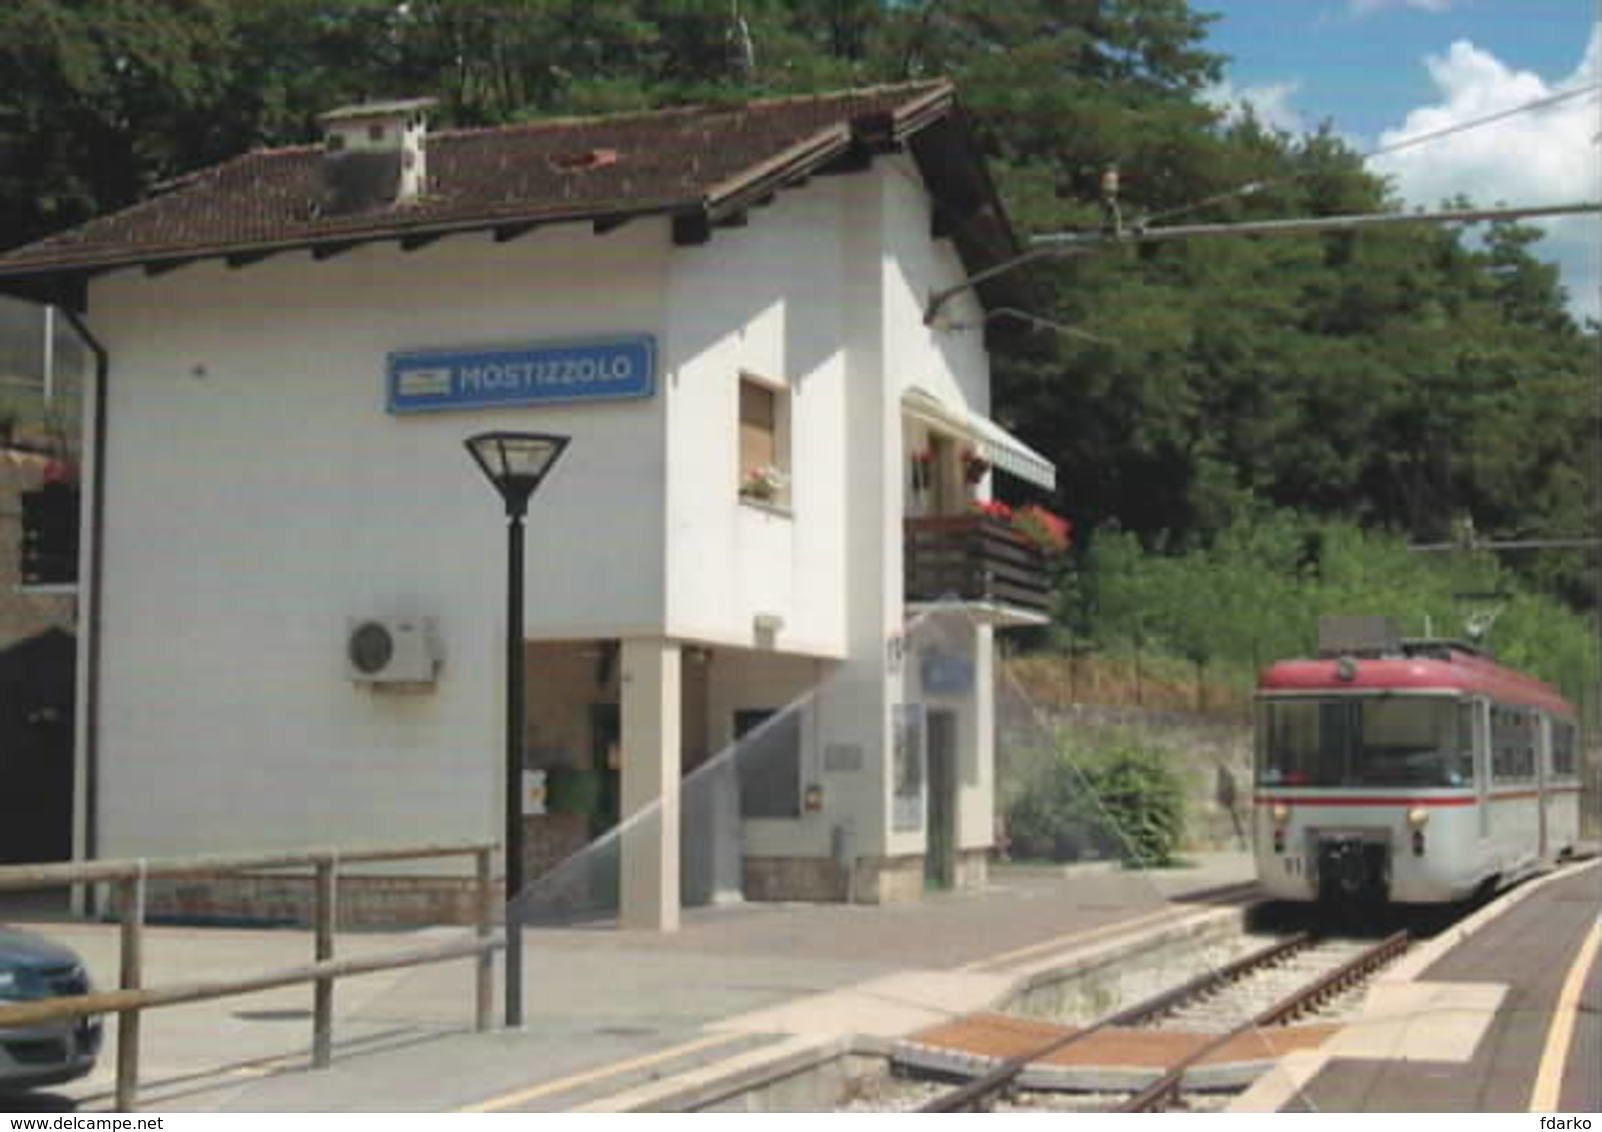 669 Treno TT - EL 01 Stanga-TIBB Stazione Di Mostizzolo Trento Railroad Train Railways FS - Treni